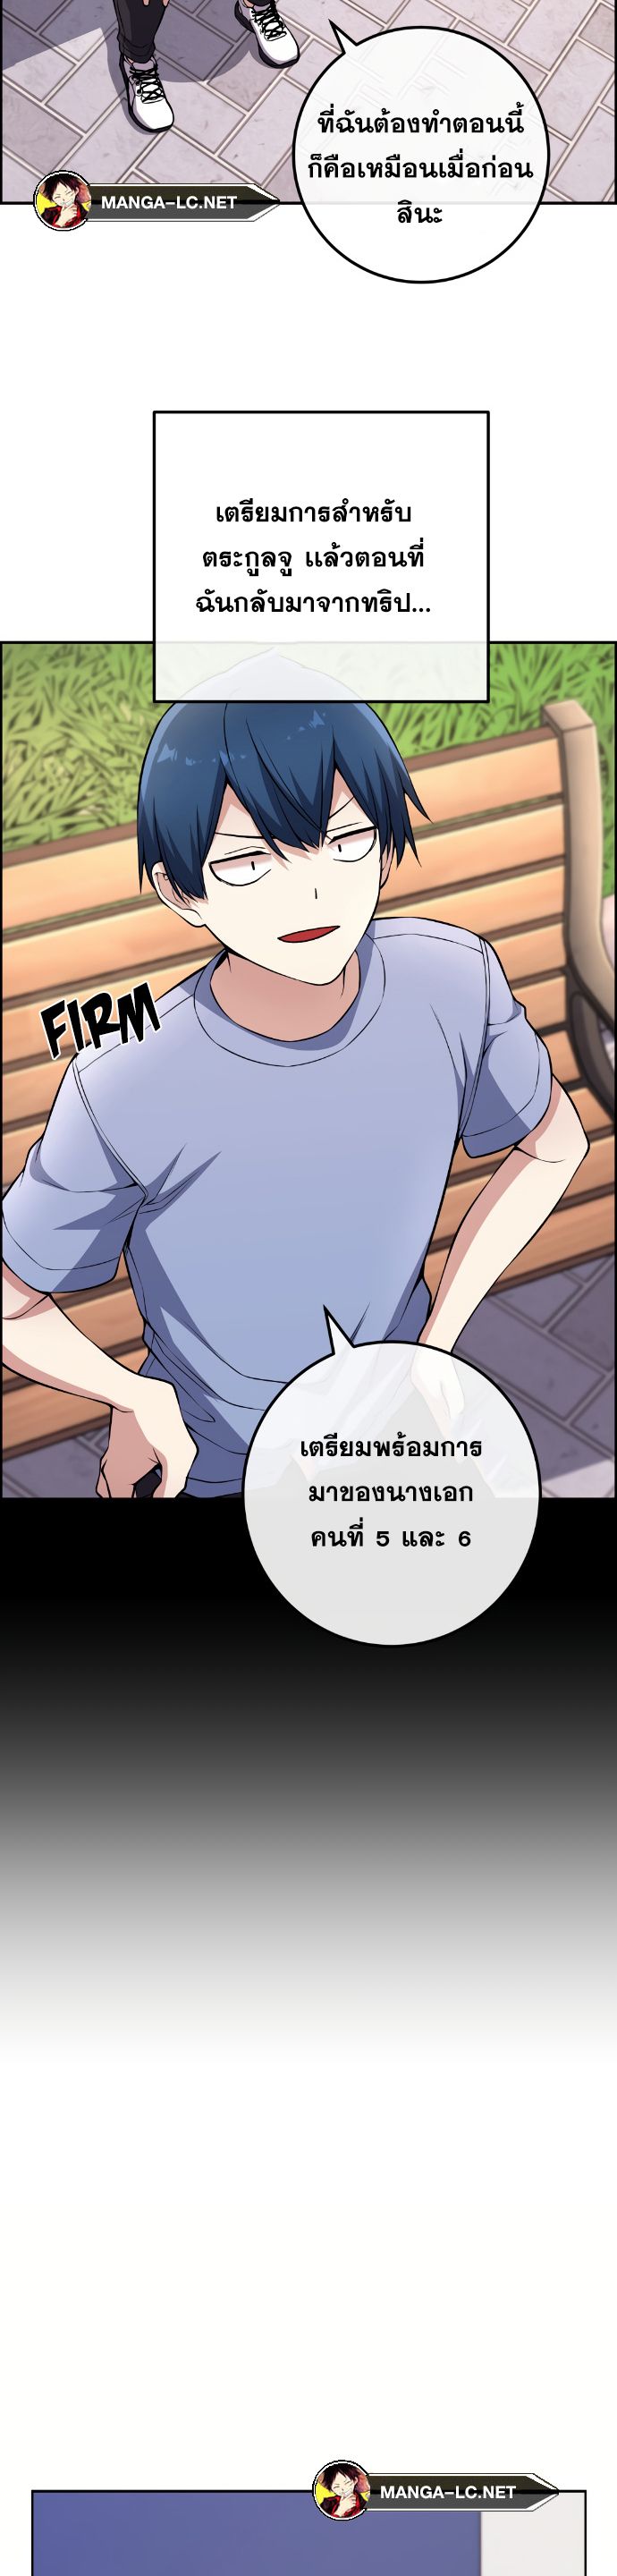 Webtoon Character Na Kang Lim ตอนที่ 131 (13)